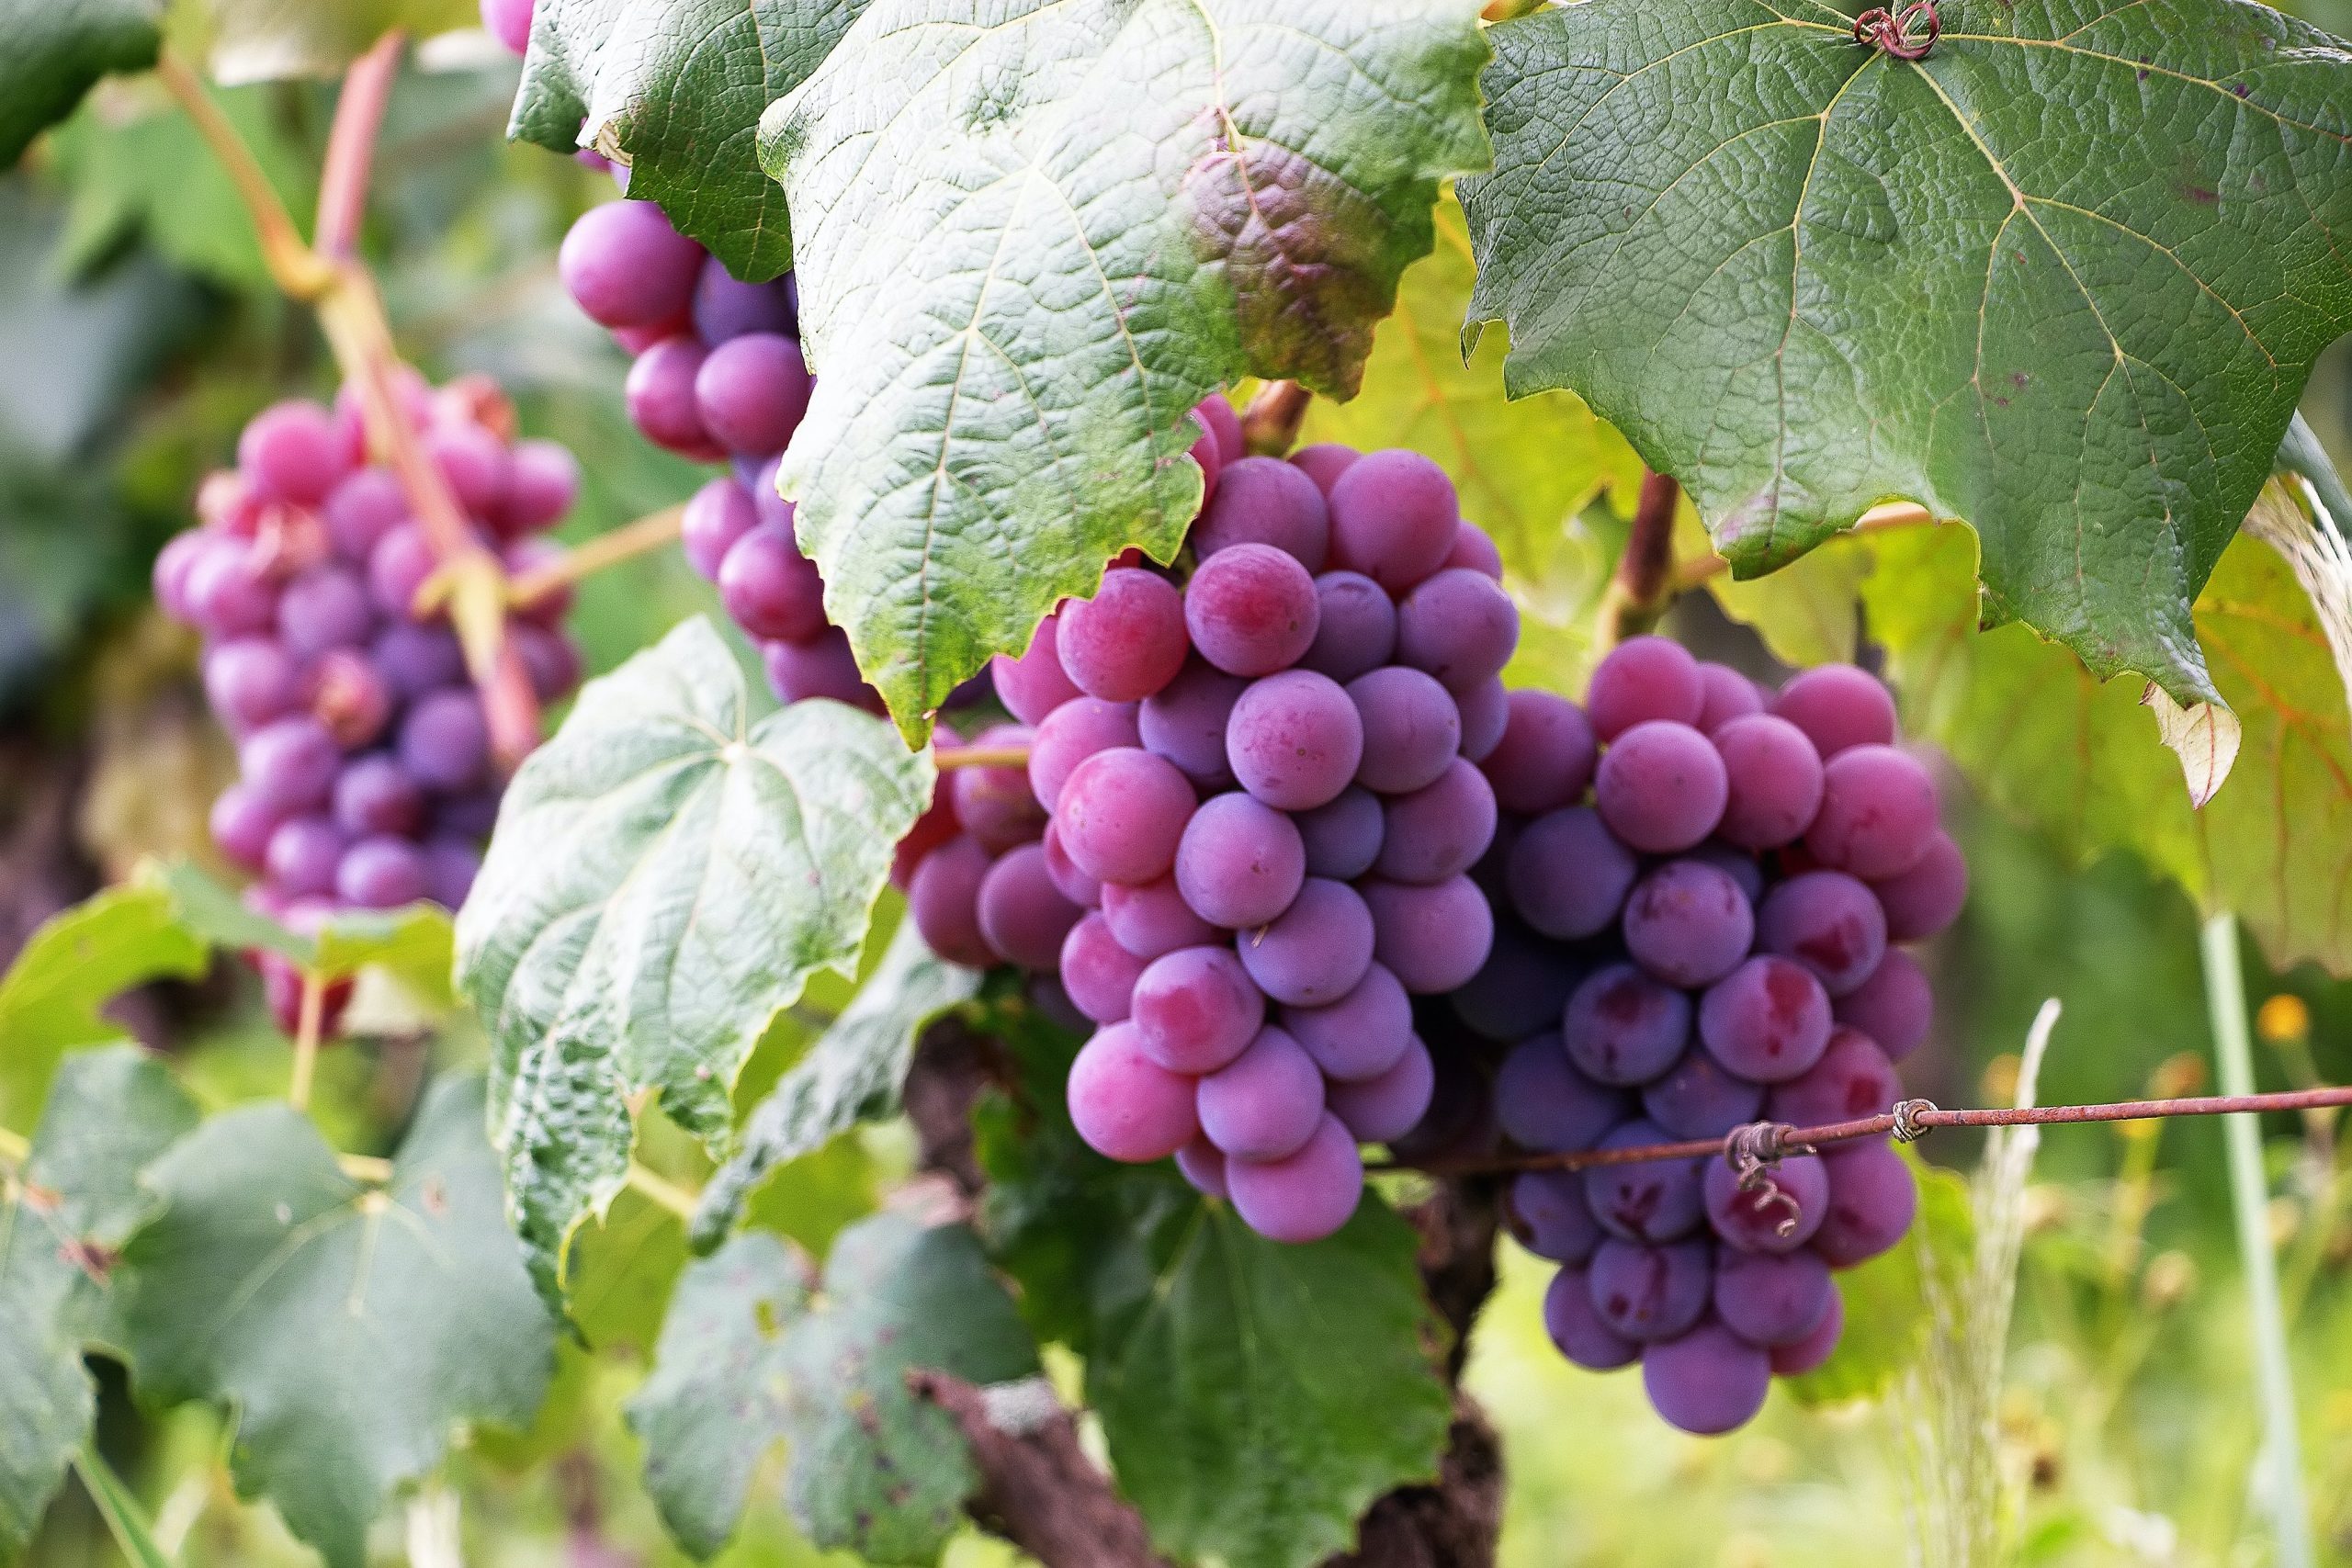 La vid es la planta de la uva que se siembra en los viñedos